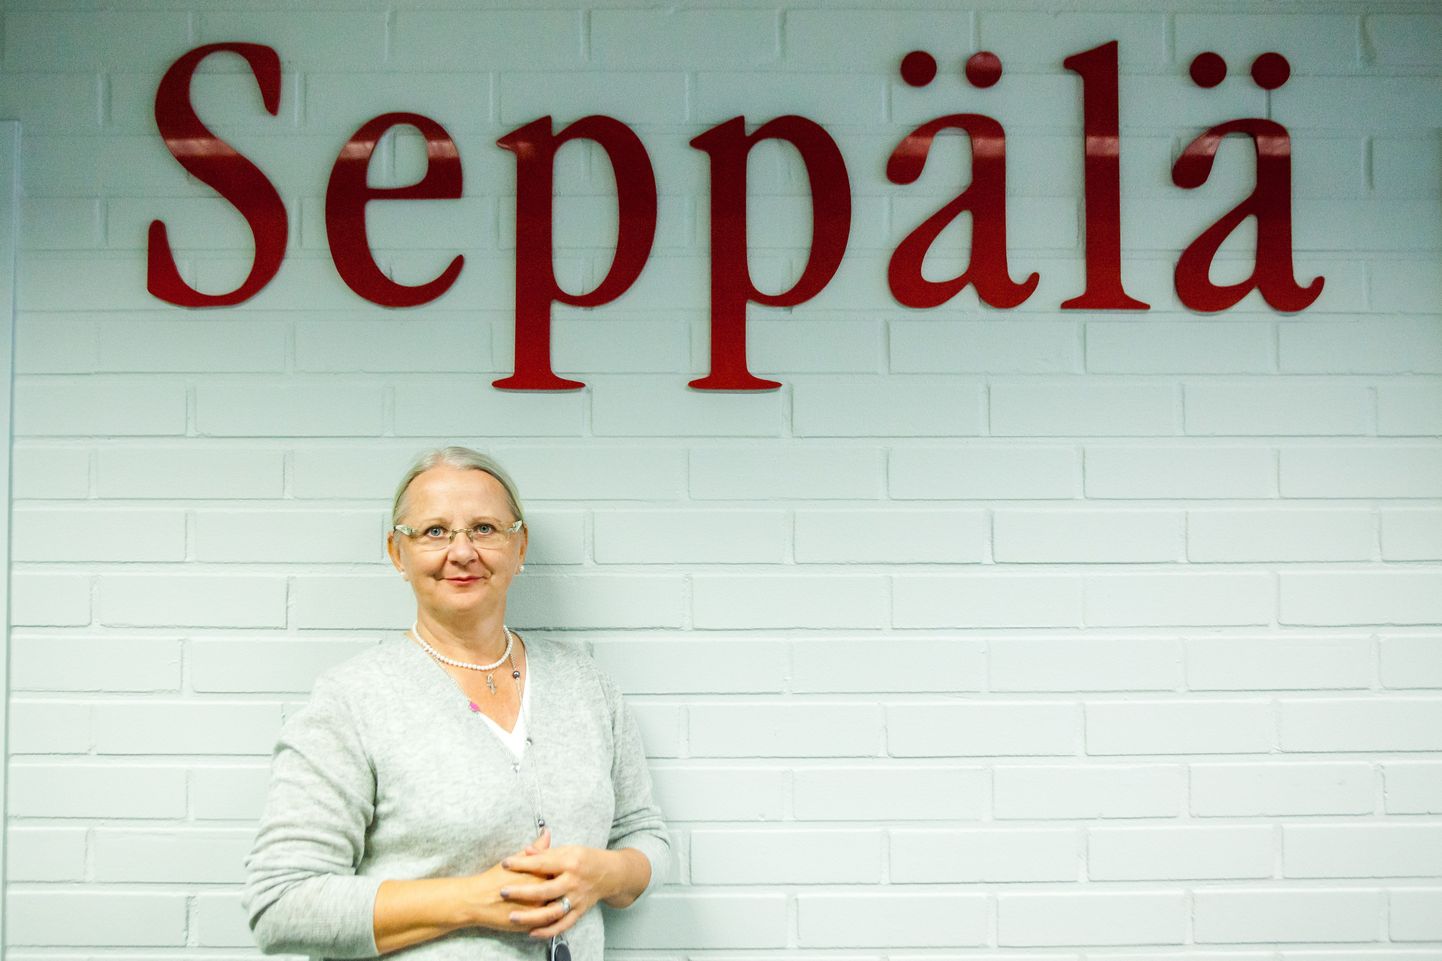 2015. aastal Seppälä juhtimise üle võtnud Eveliina Melentjeffil ei õnnestunud ettevõtet päästa.